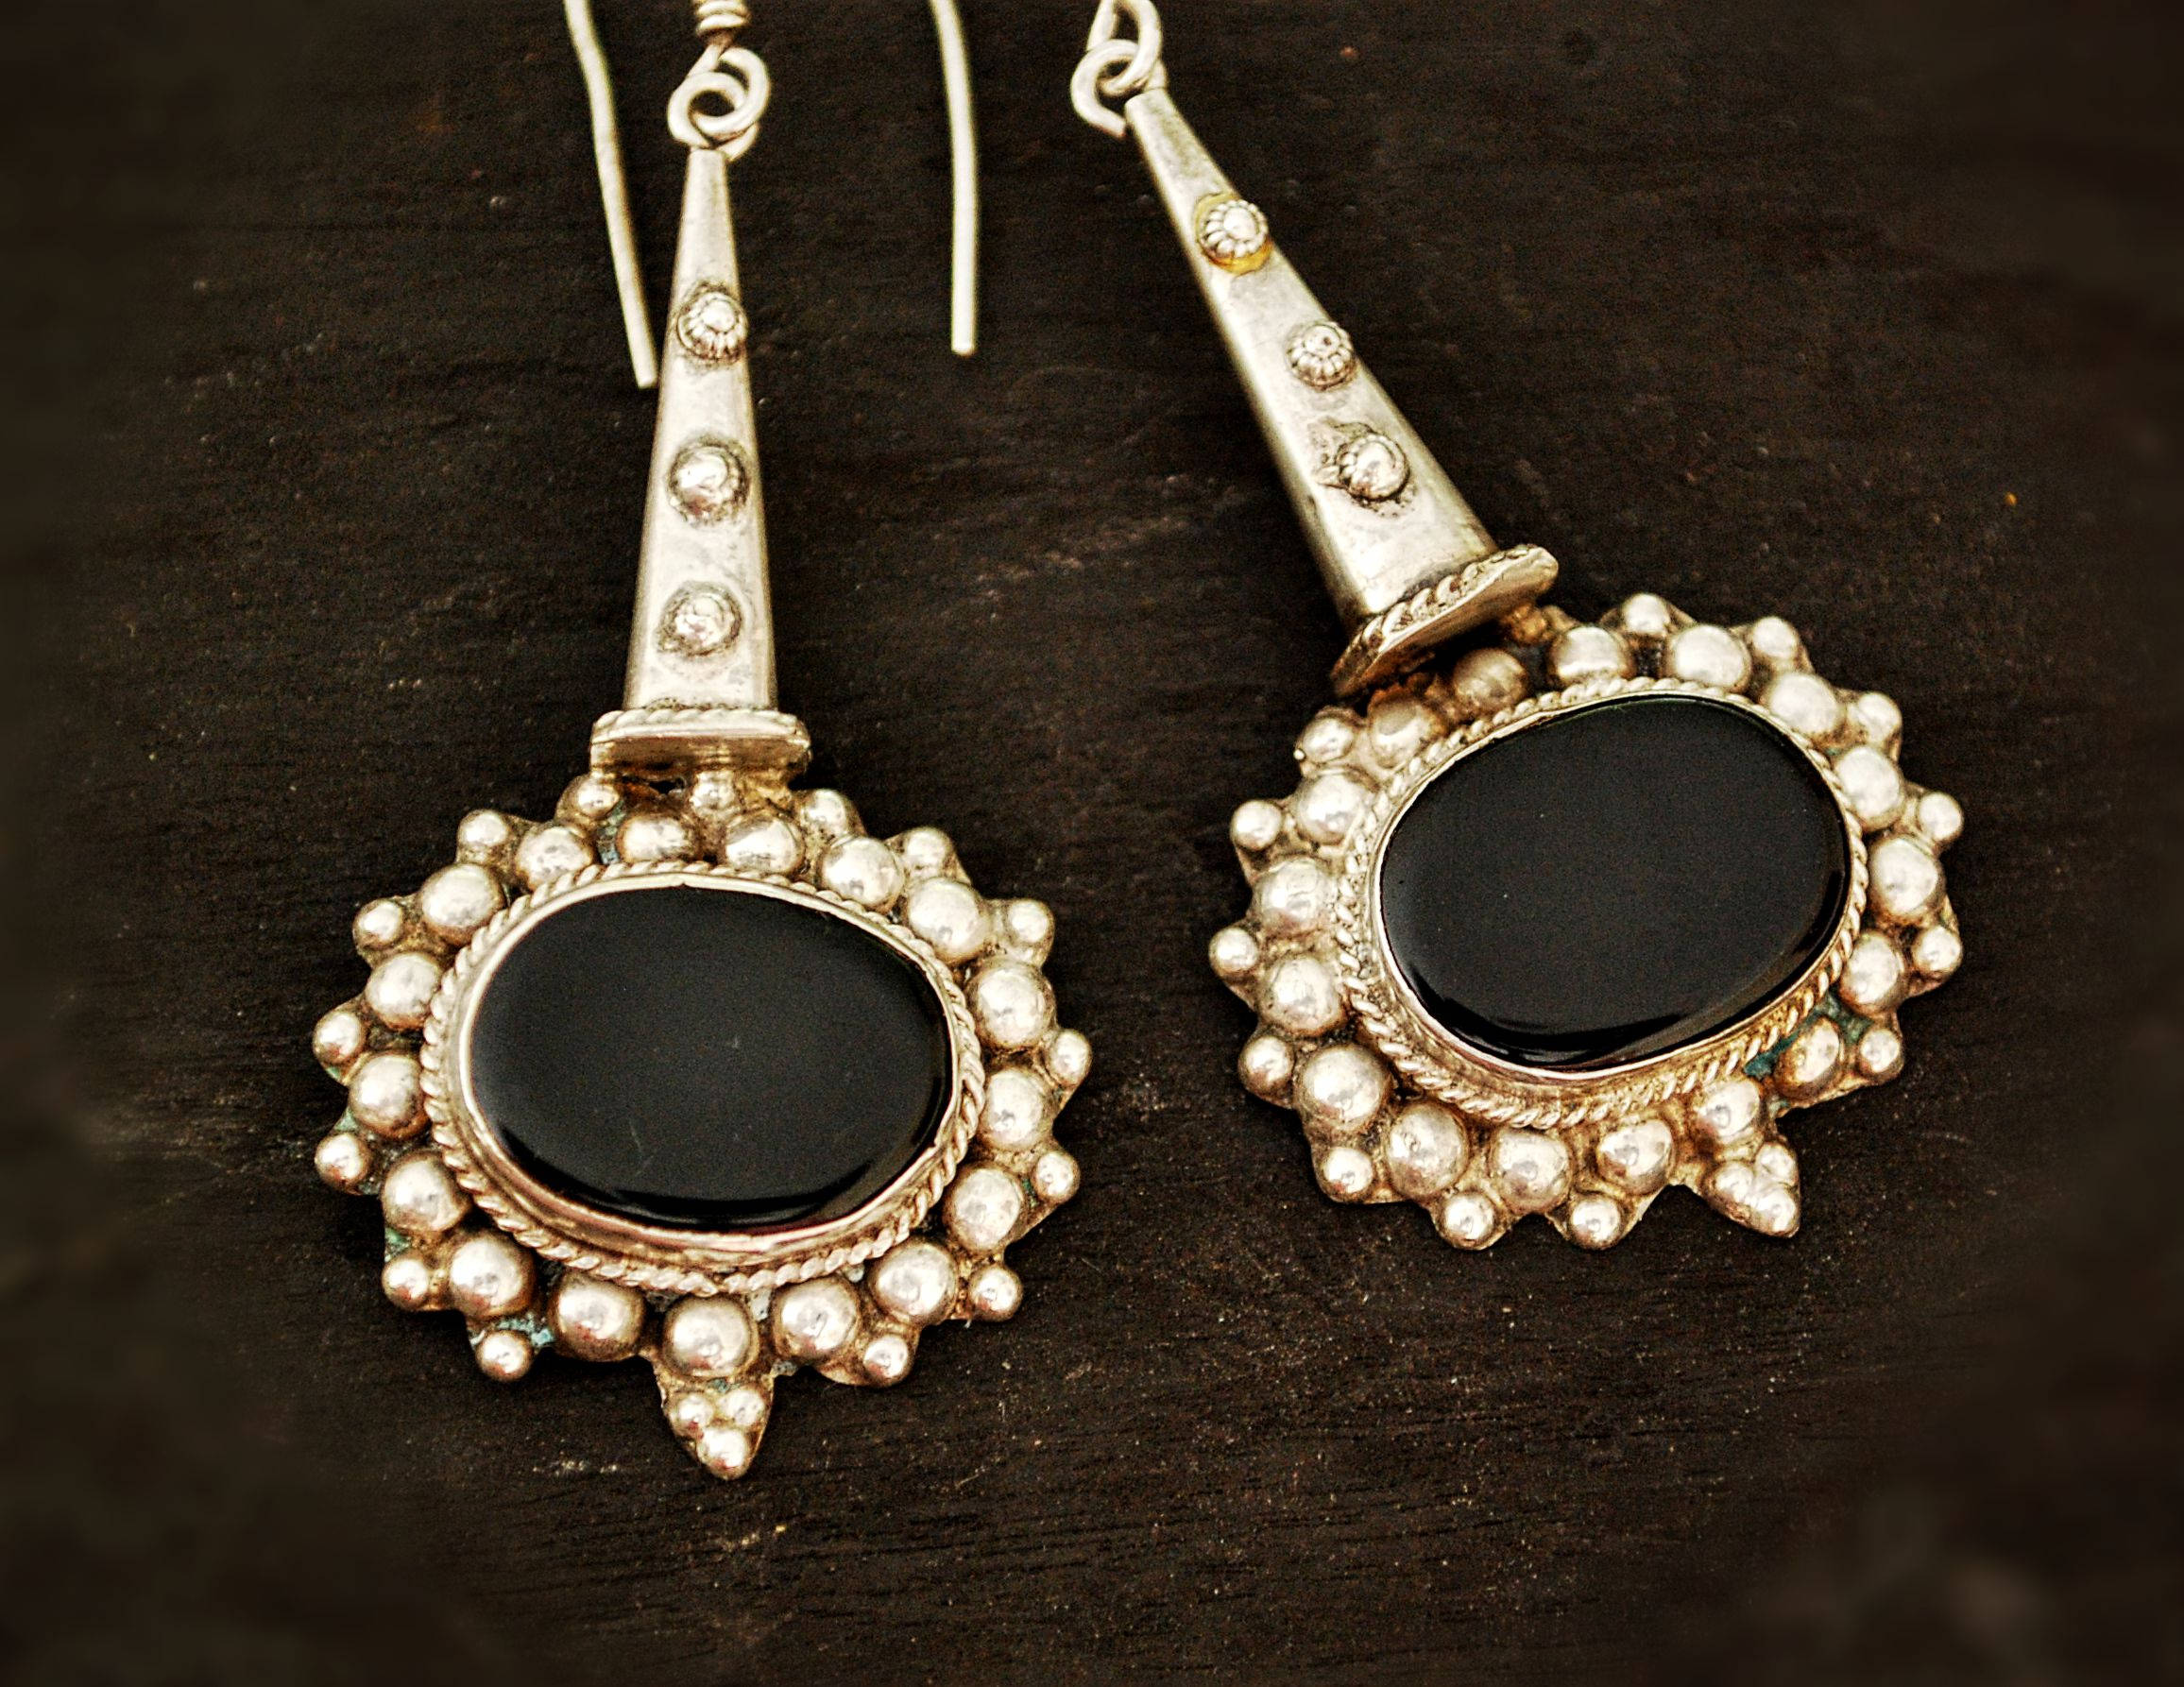 Ethnic Onyx Earrings from India - Gypsy Earrings - Ethnic Tribal Earrings - Ethnic India Earrings - Onyx Earrings - Ethnic Onyx